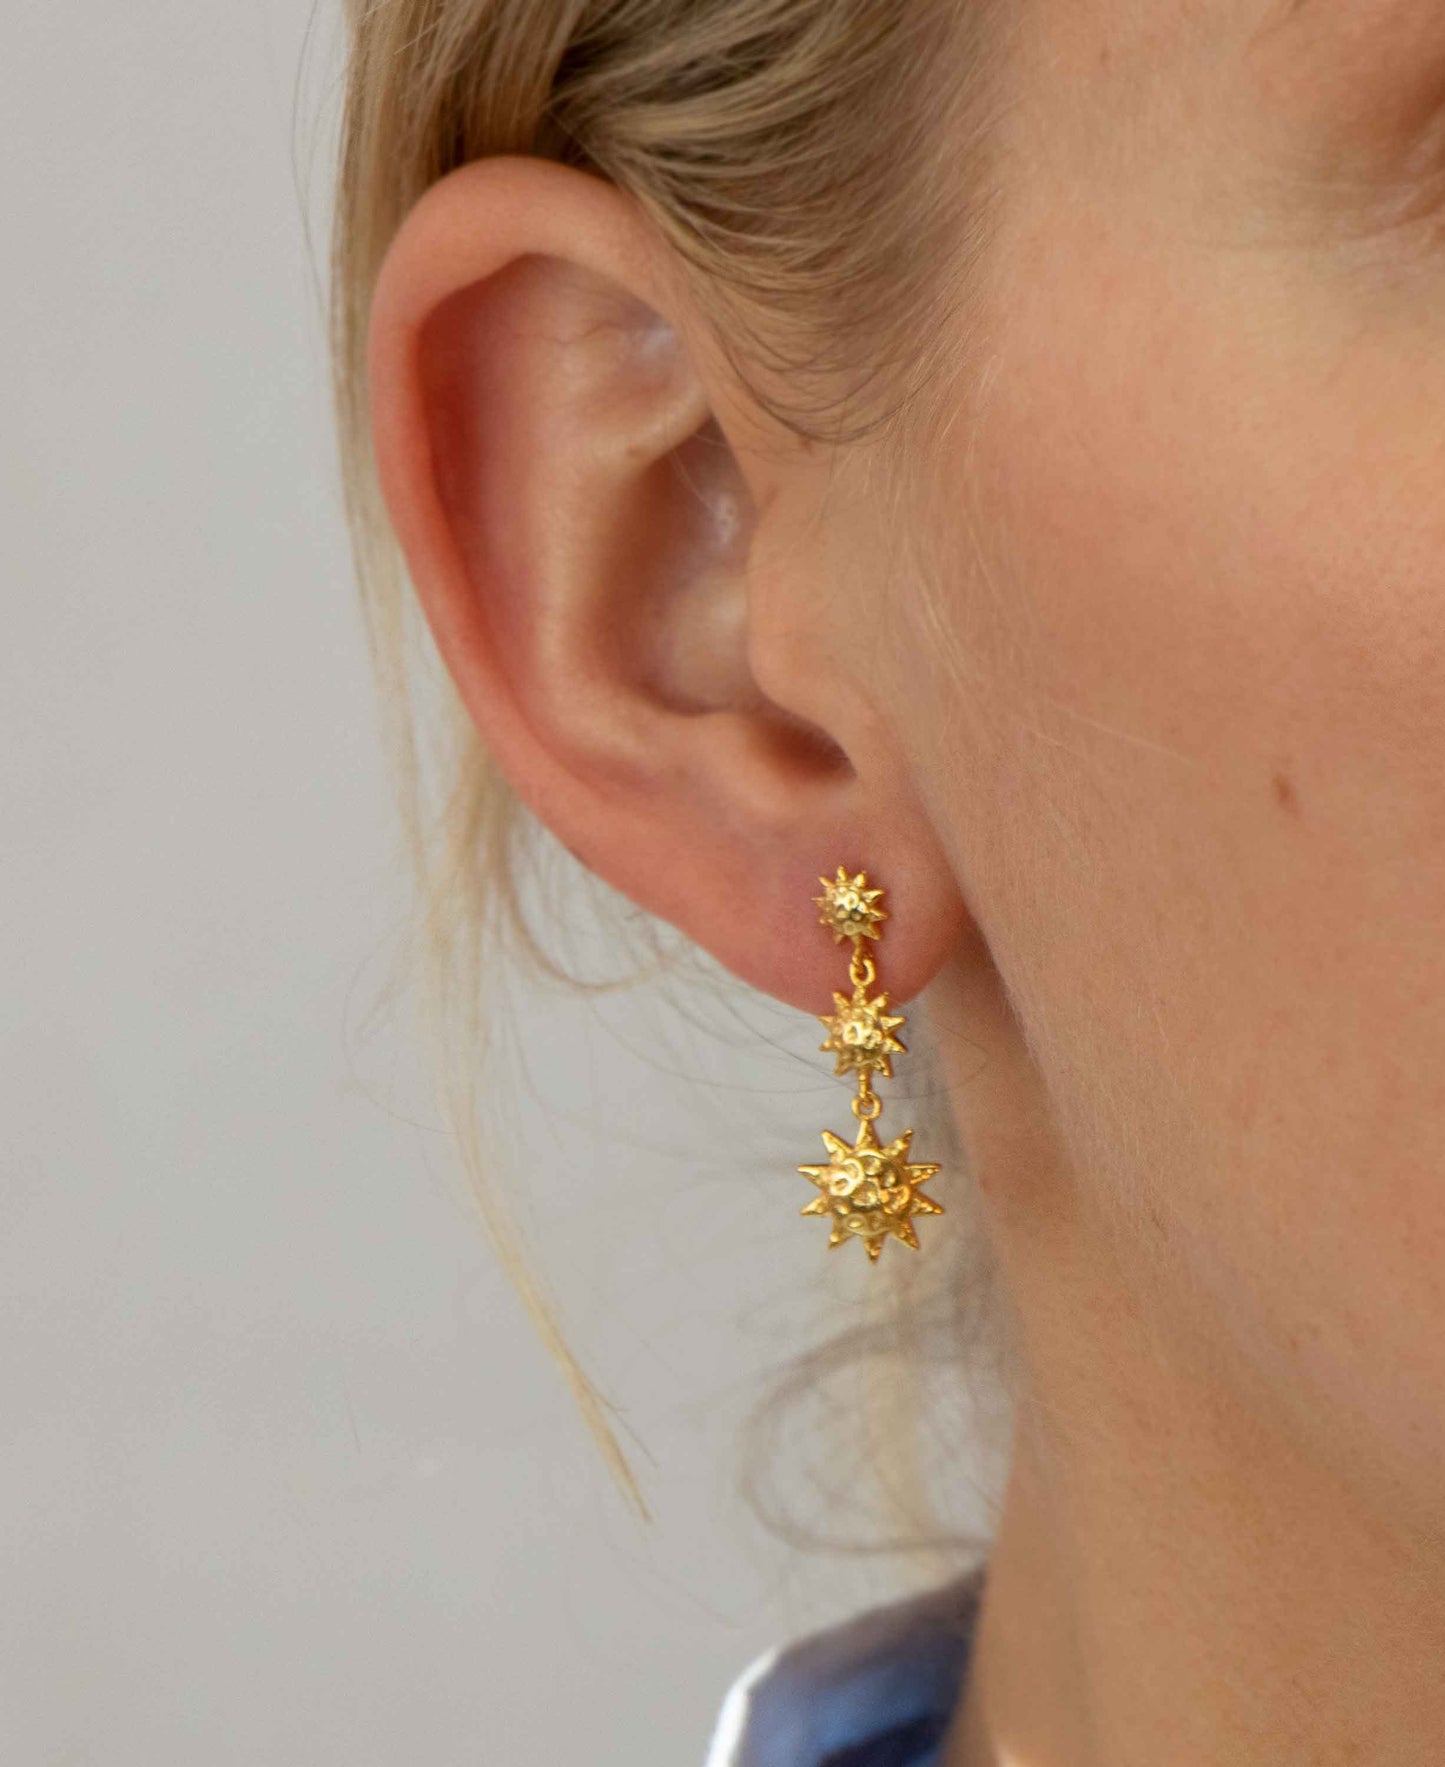 Apollo tripple earrings